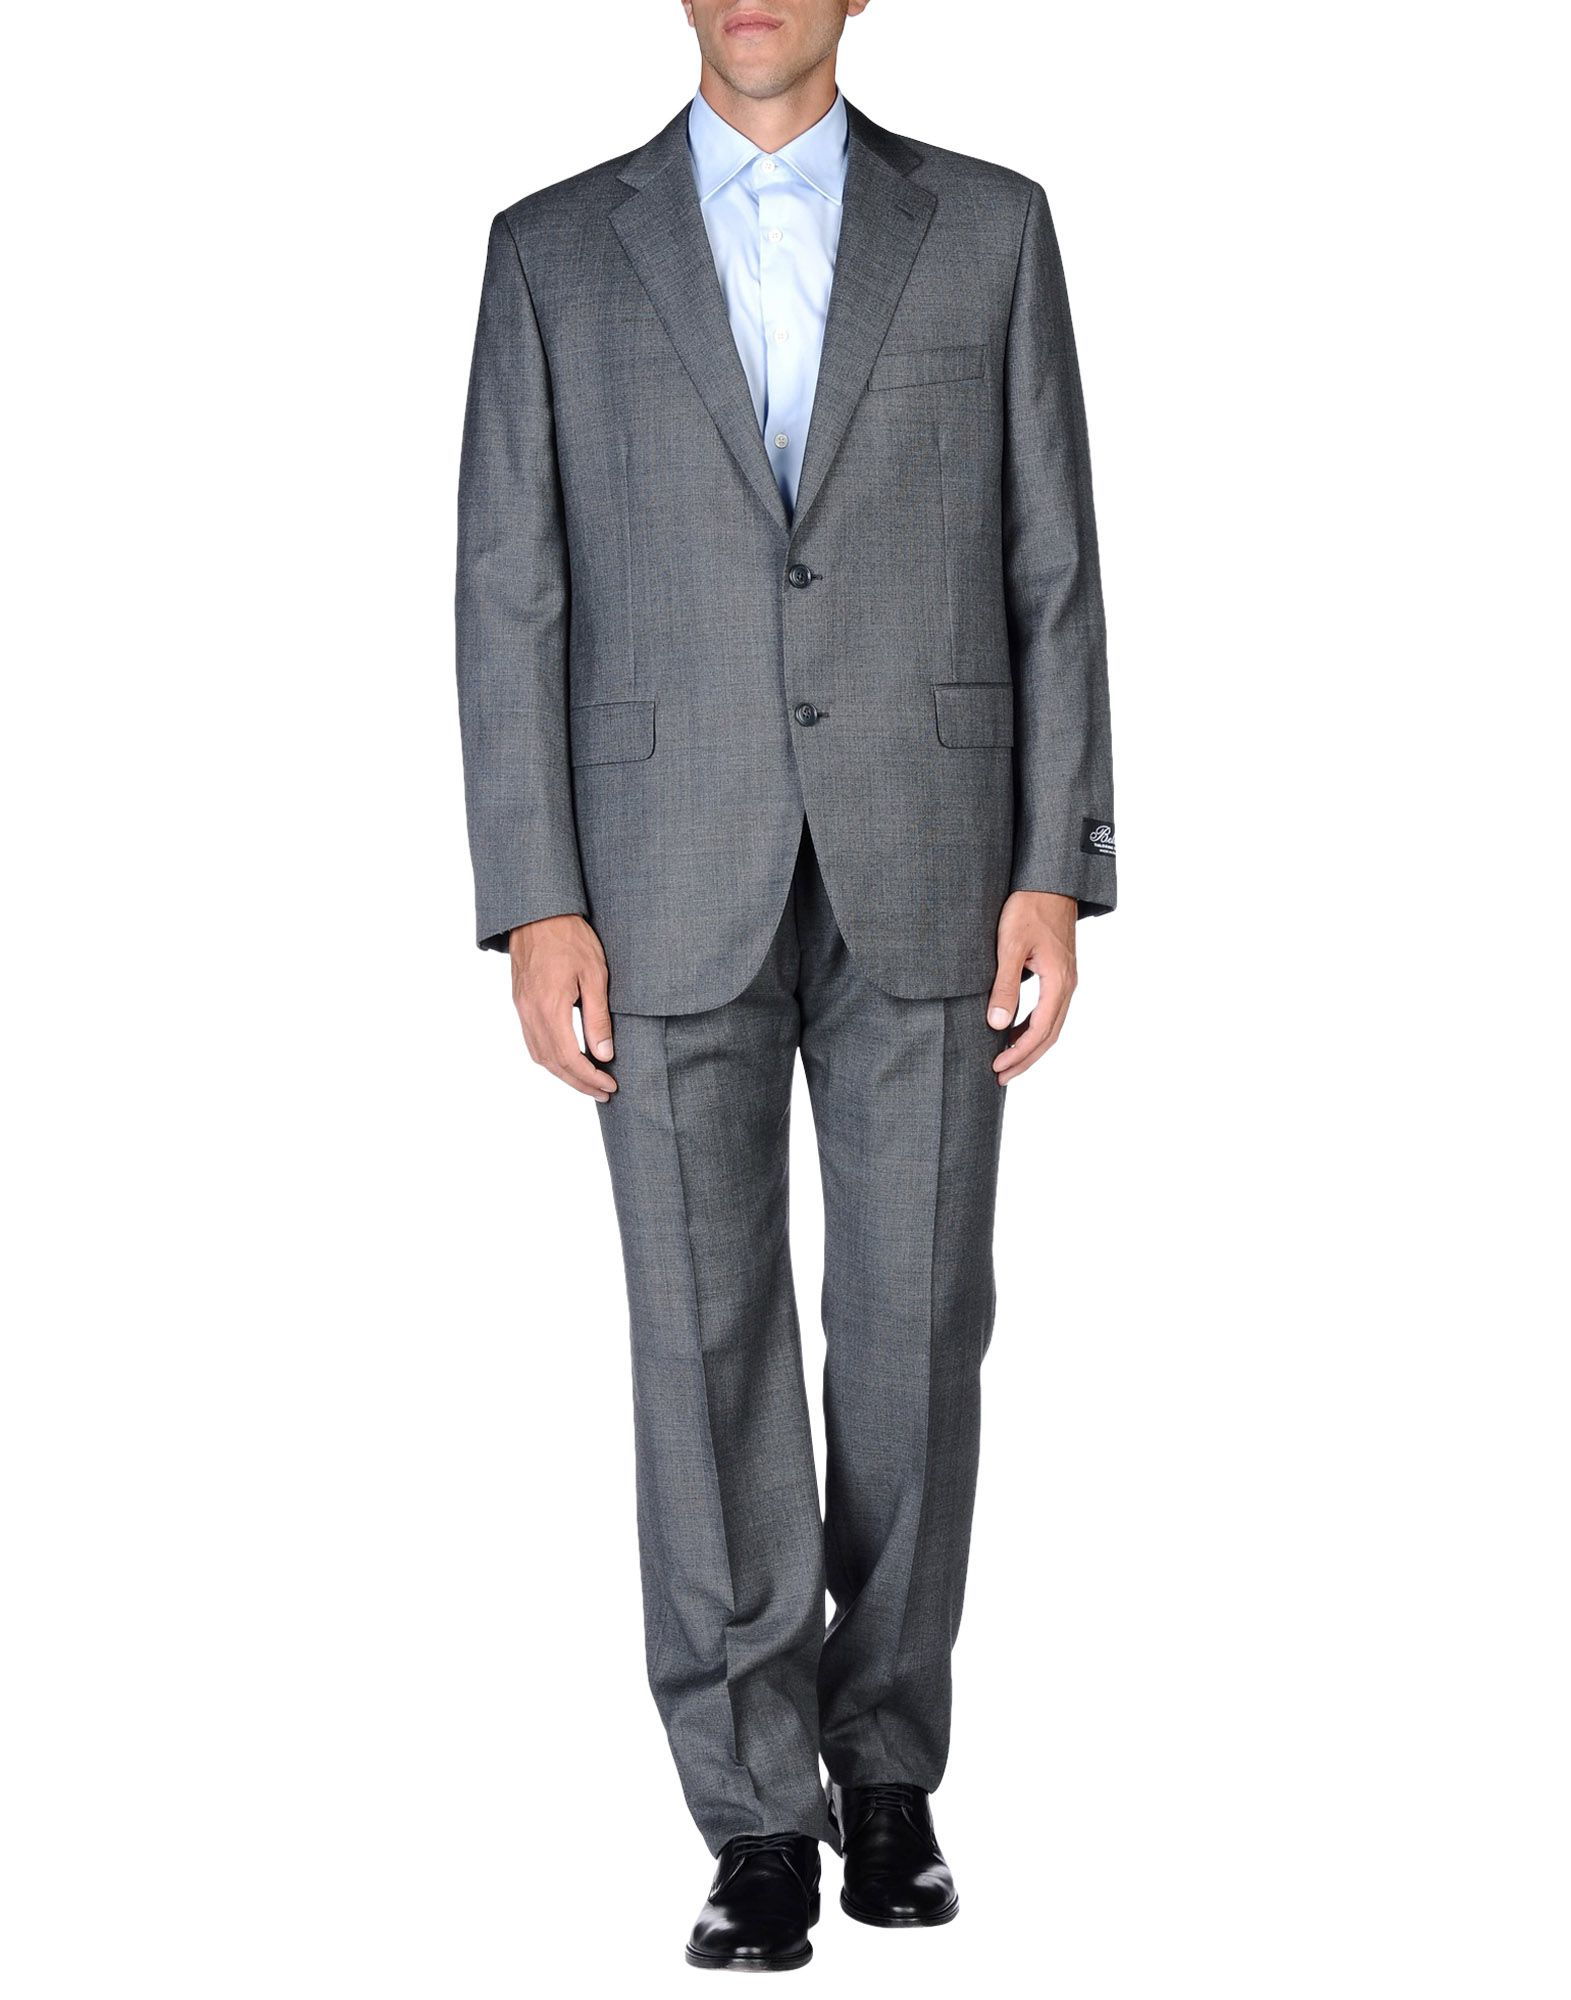 Lyst - Belvest Suit in Gray for Men